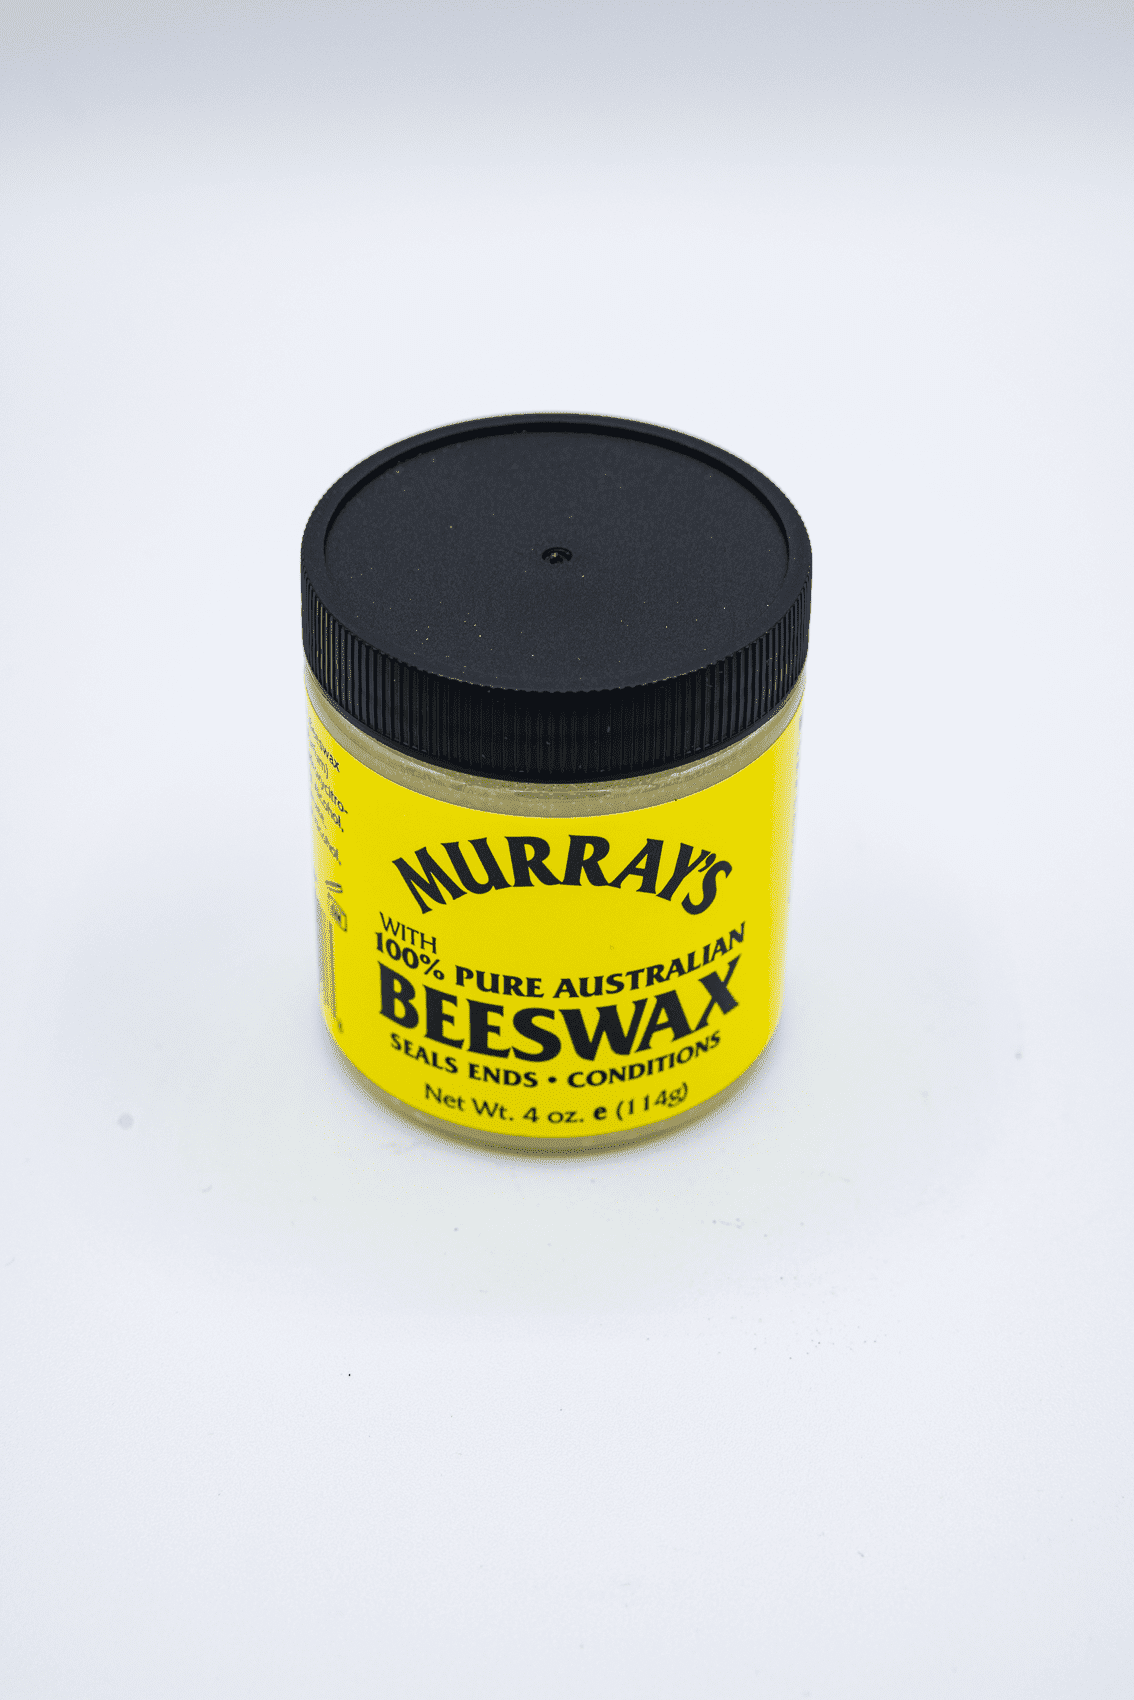 Murray's Black Beeswax, 4 oz - Smith's Food and Drug